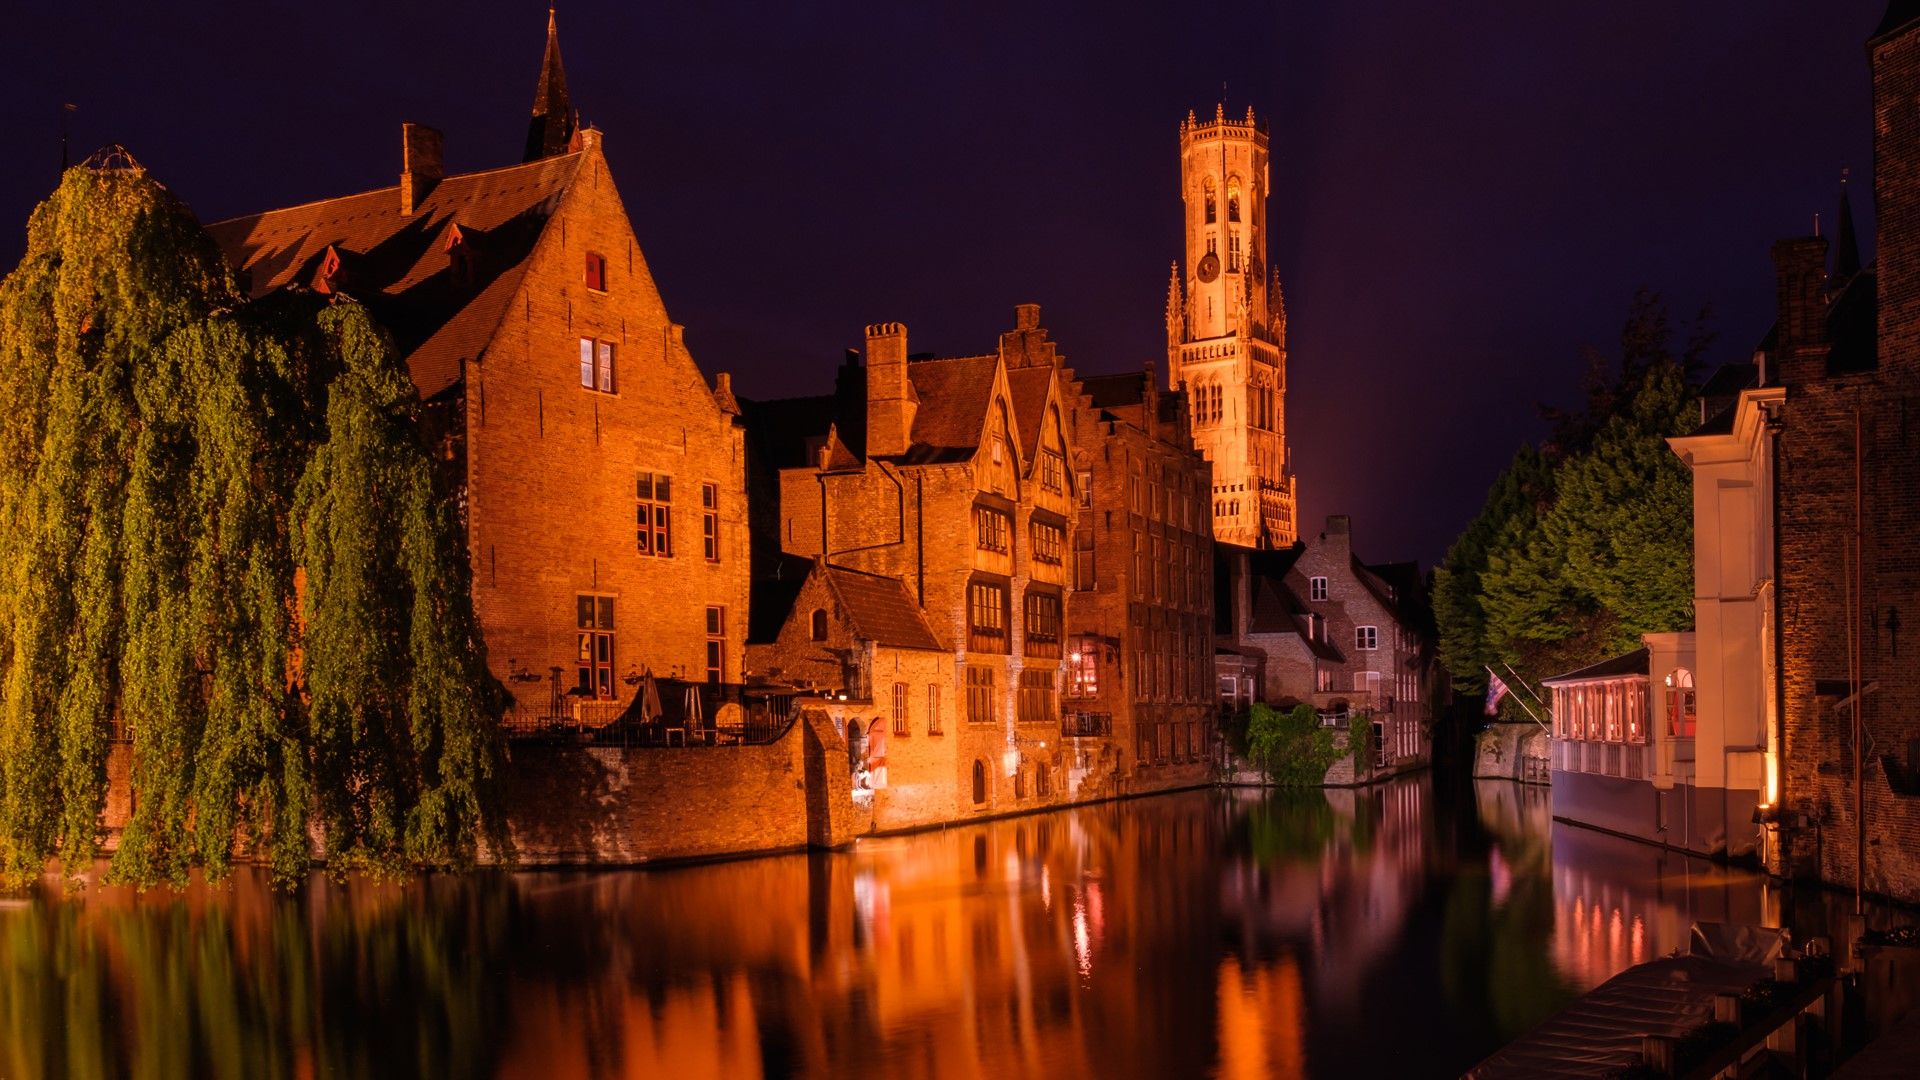 Huidenvetters plein, Dijver river canal and Belfort (Belfry) tower, Bruges, Belgium. Windows 10 Spotlight Image